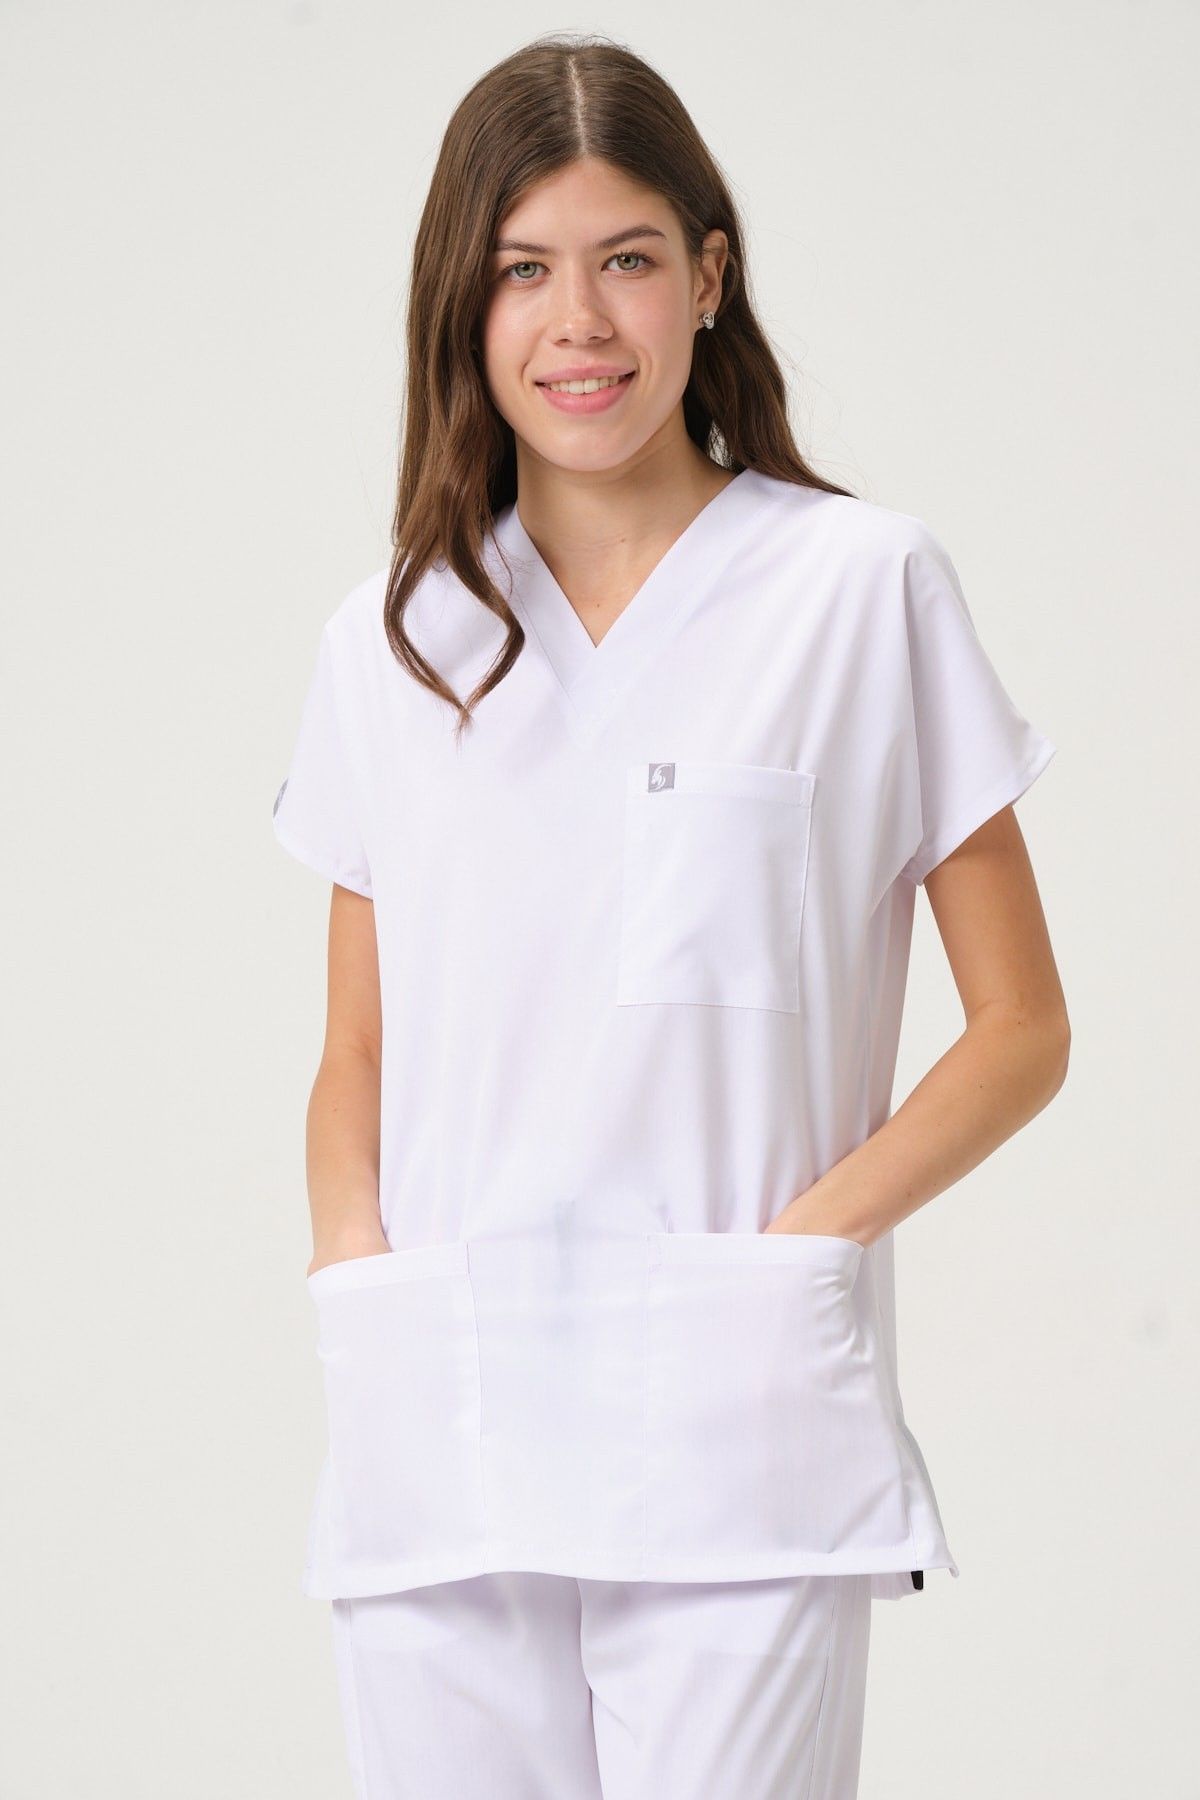 Beyaz Likralı Scrubs Doktor Hemşire Forması Yarasa Kol Takım Unisex